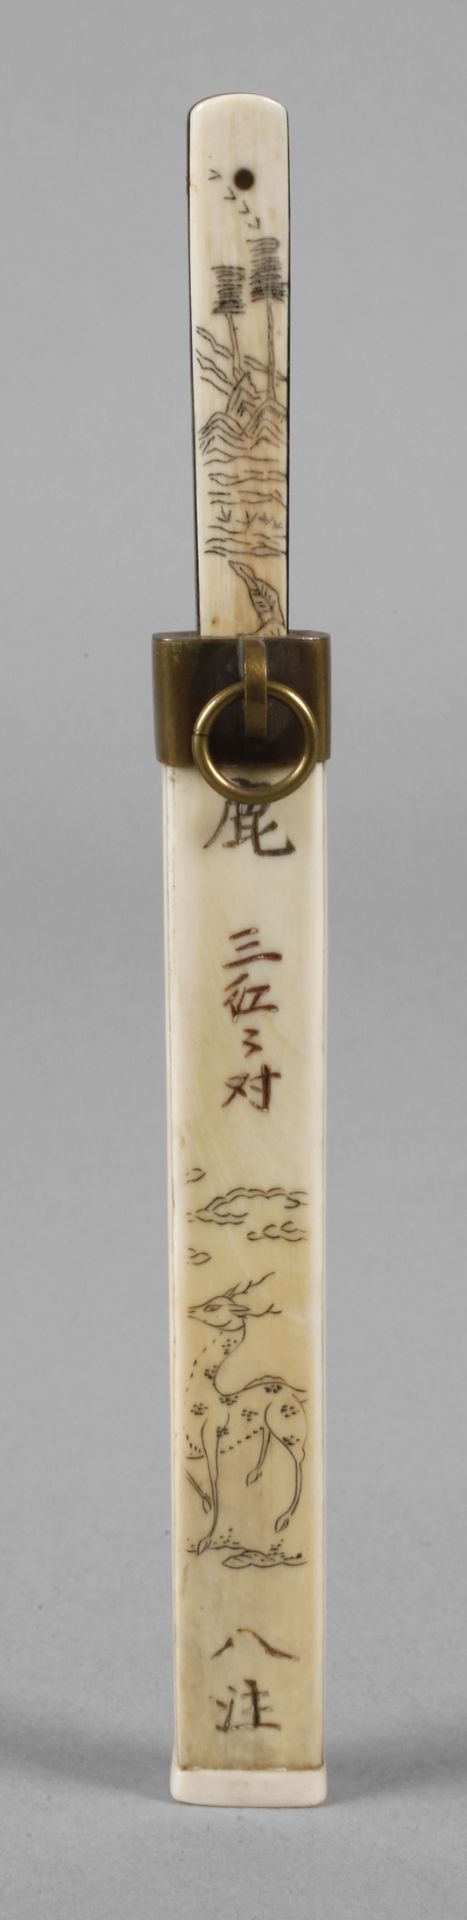 Miniatur Brieföffner Meiji-Periode, signiert, Elfenbein beschnitzt, teils graviert und geschwärzt,